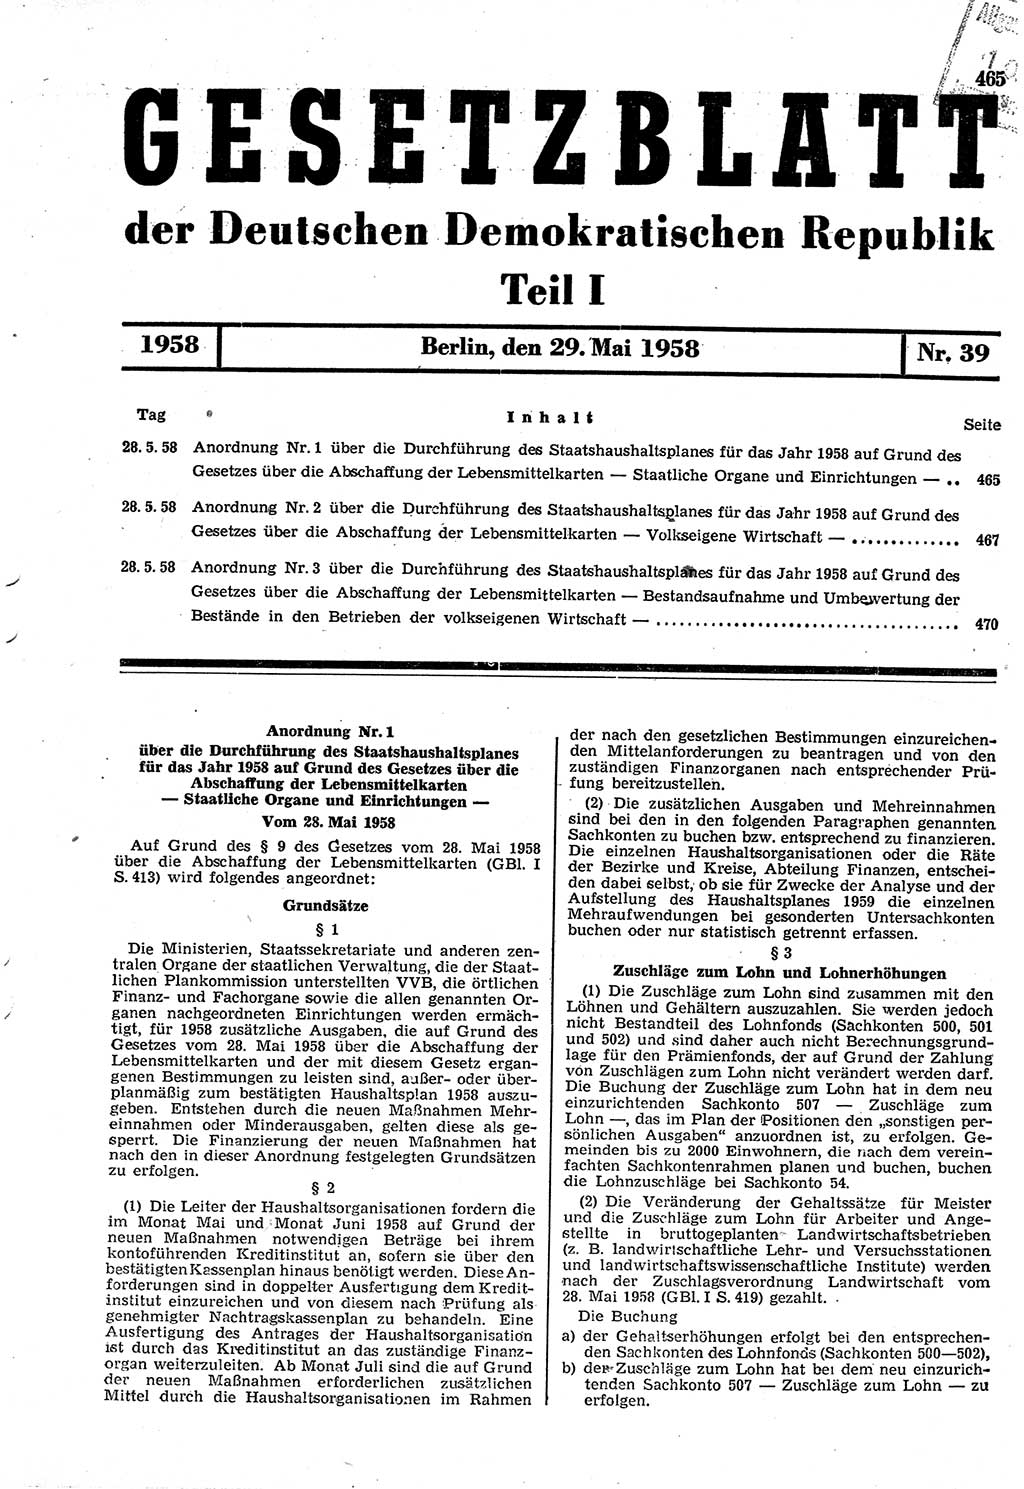 Gesetzblatt (GBl.) der Deutschen Demokratischen Republik (DDR) Teil Ⅰ 1958, Seite 465 (GBl. DDR Ⅰ 1958, S. 465)